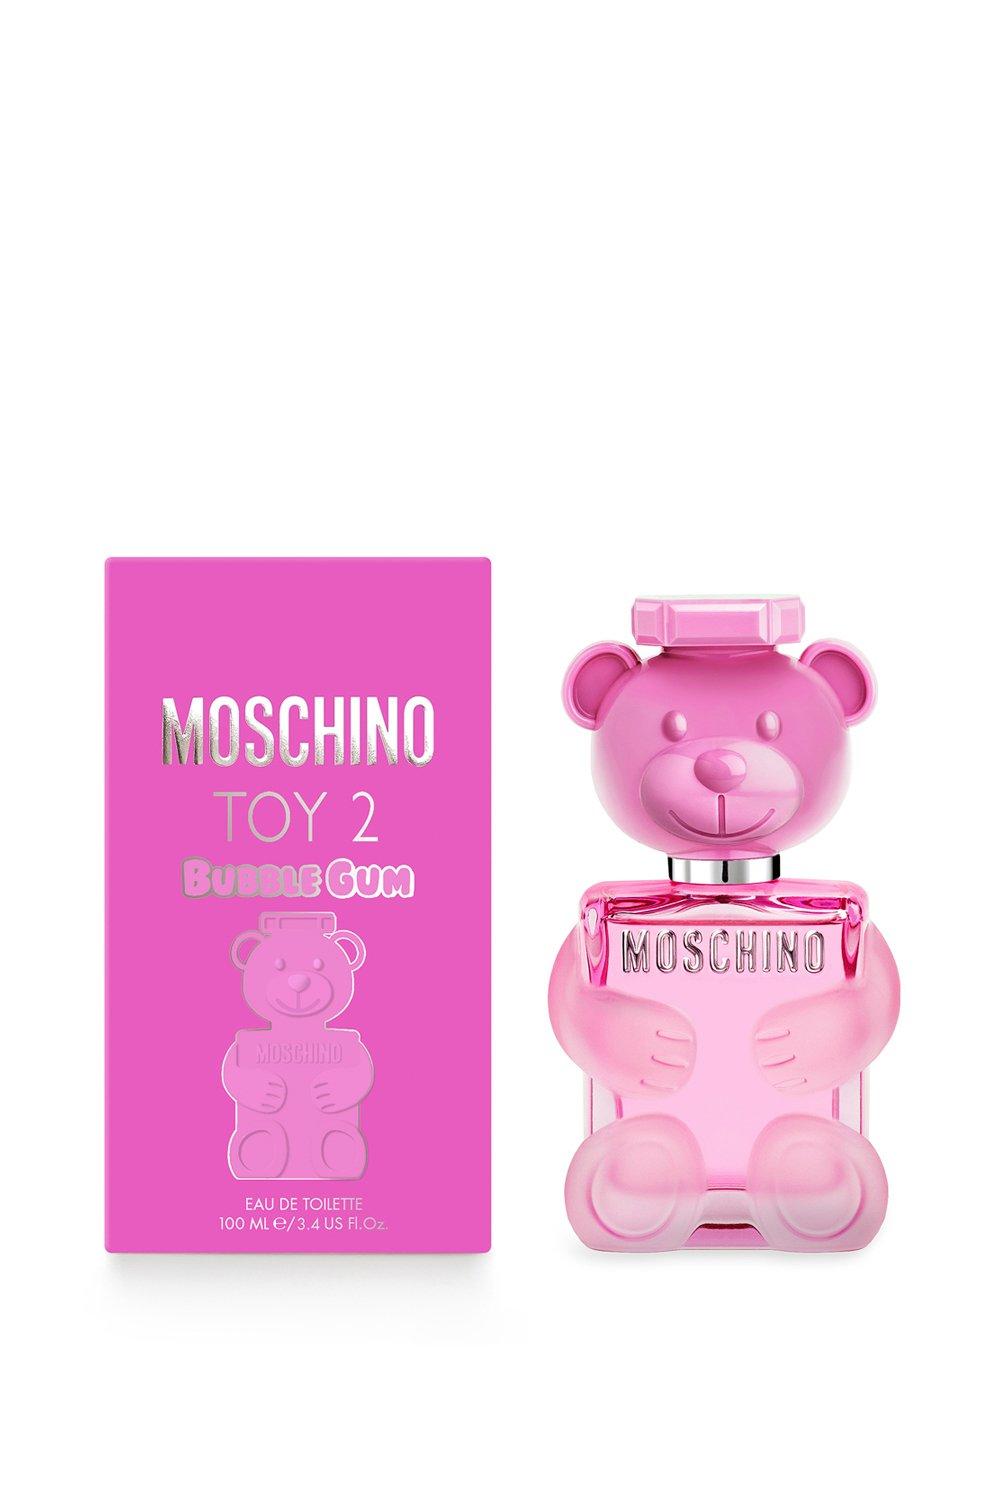 Moschino Toy2 Bubblegum Eau De Toilette | Debenhams